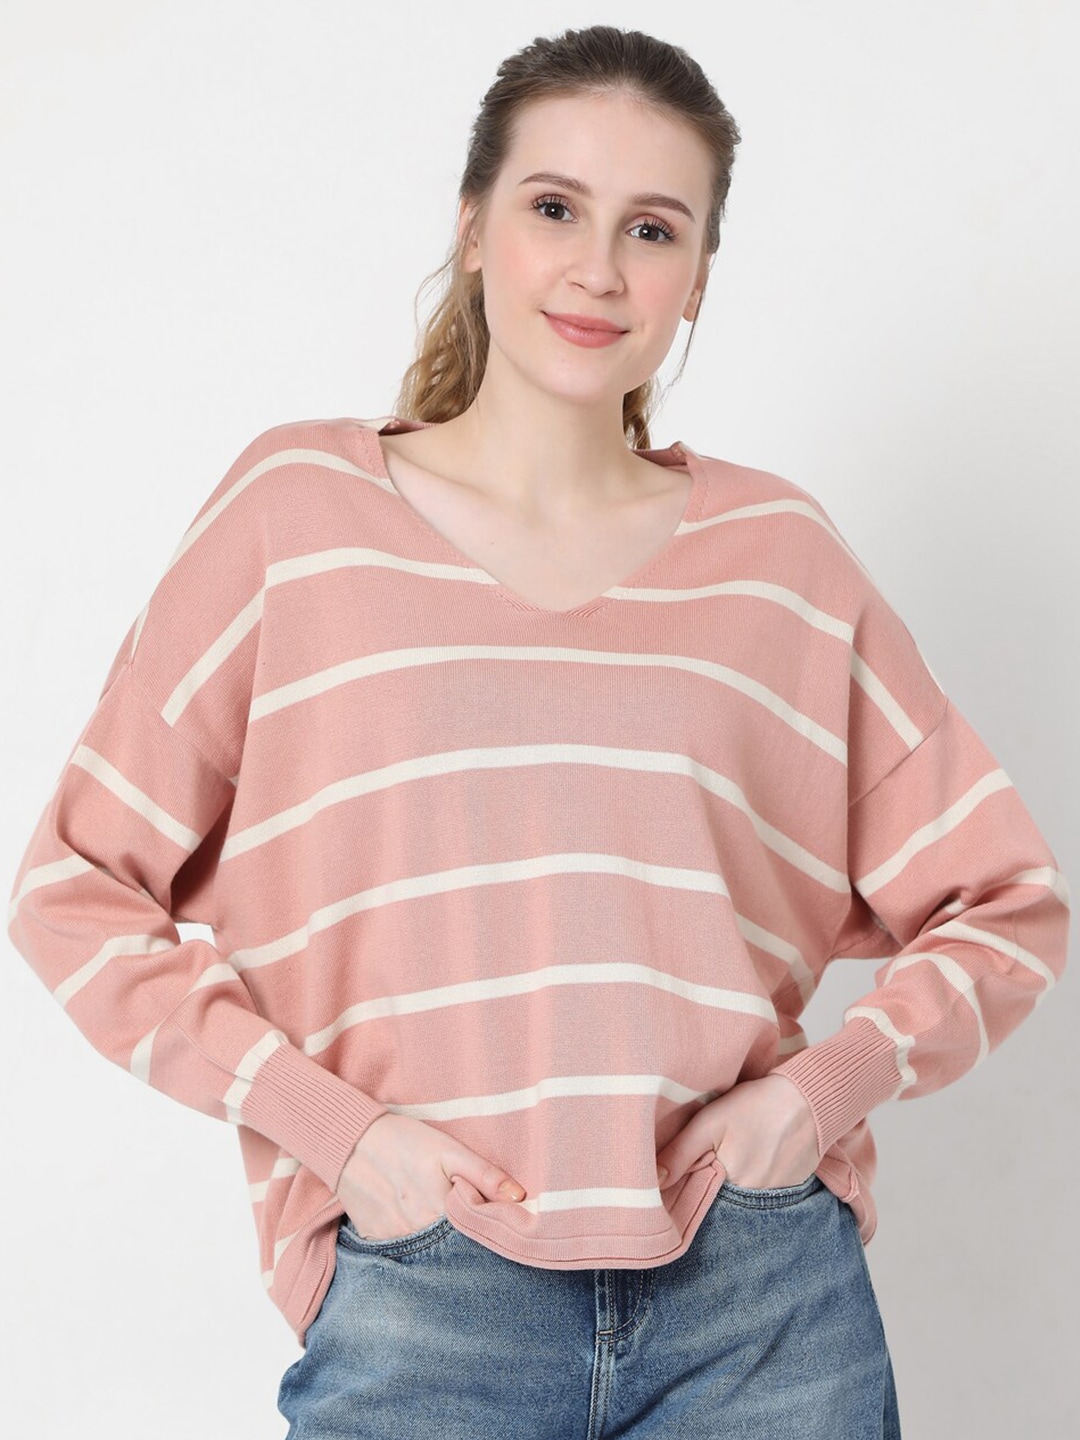 Vero Moda Women Pink & White Striped Pullover Price in India